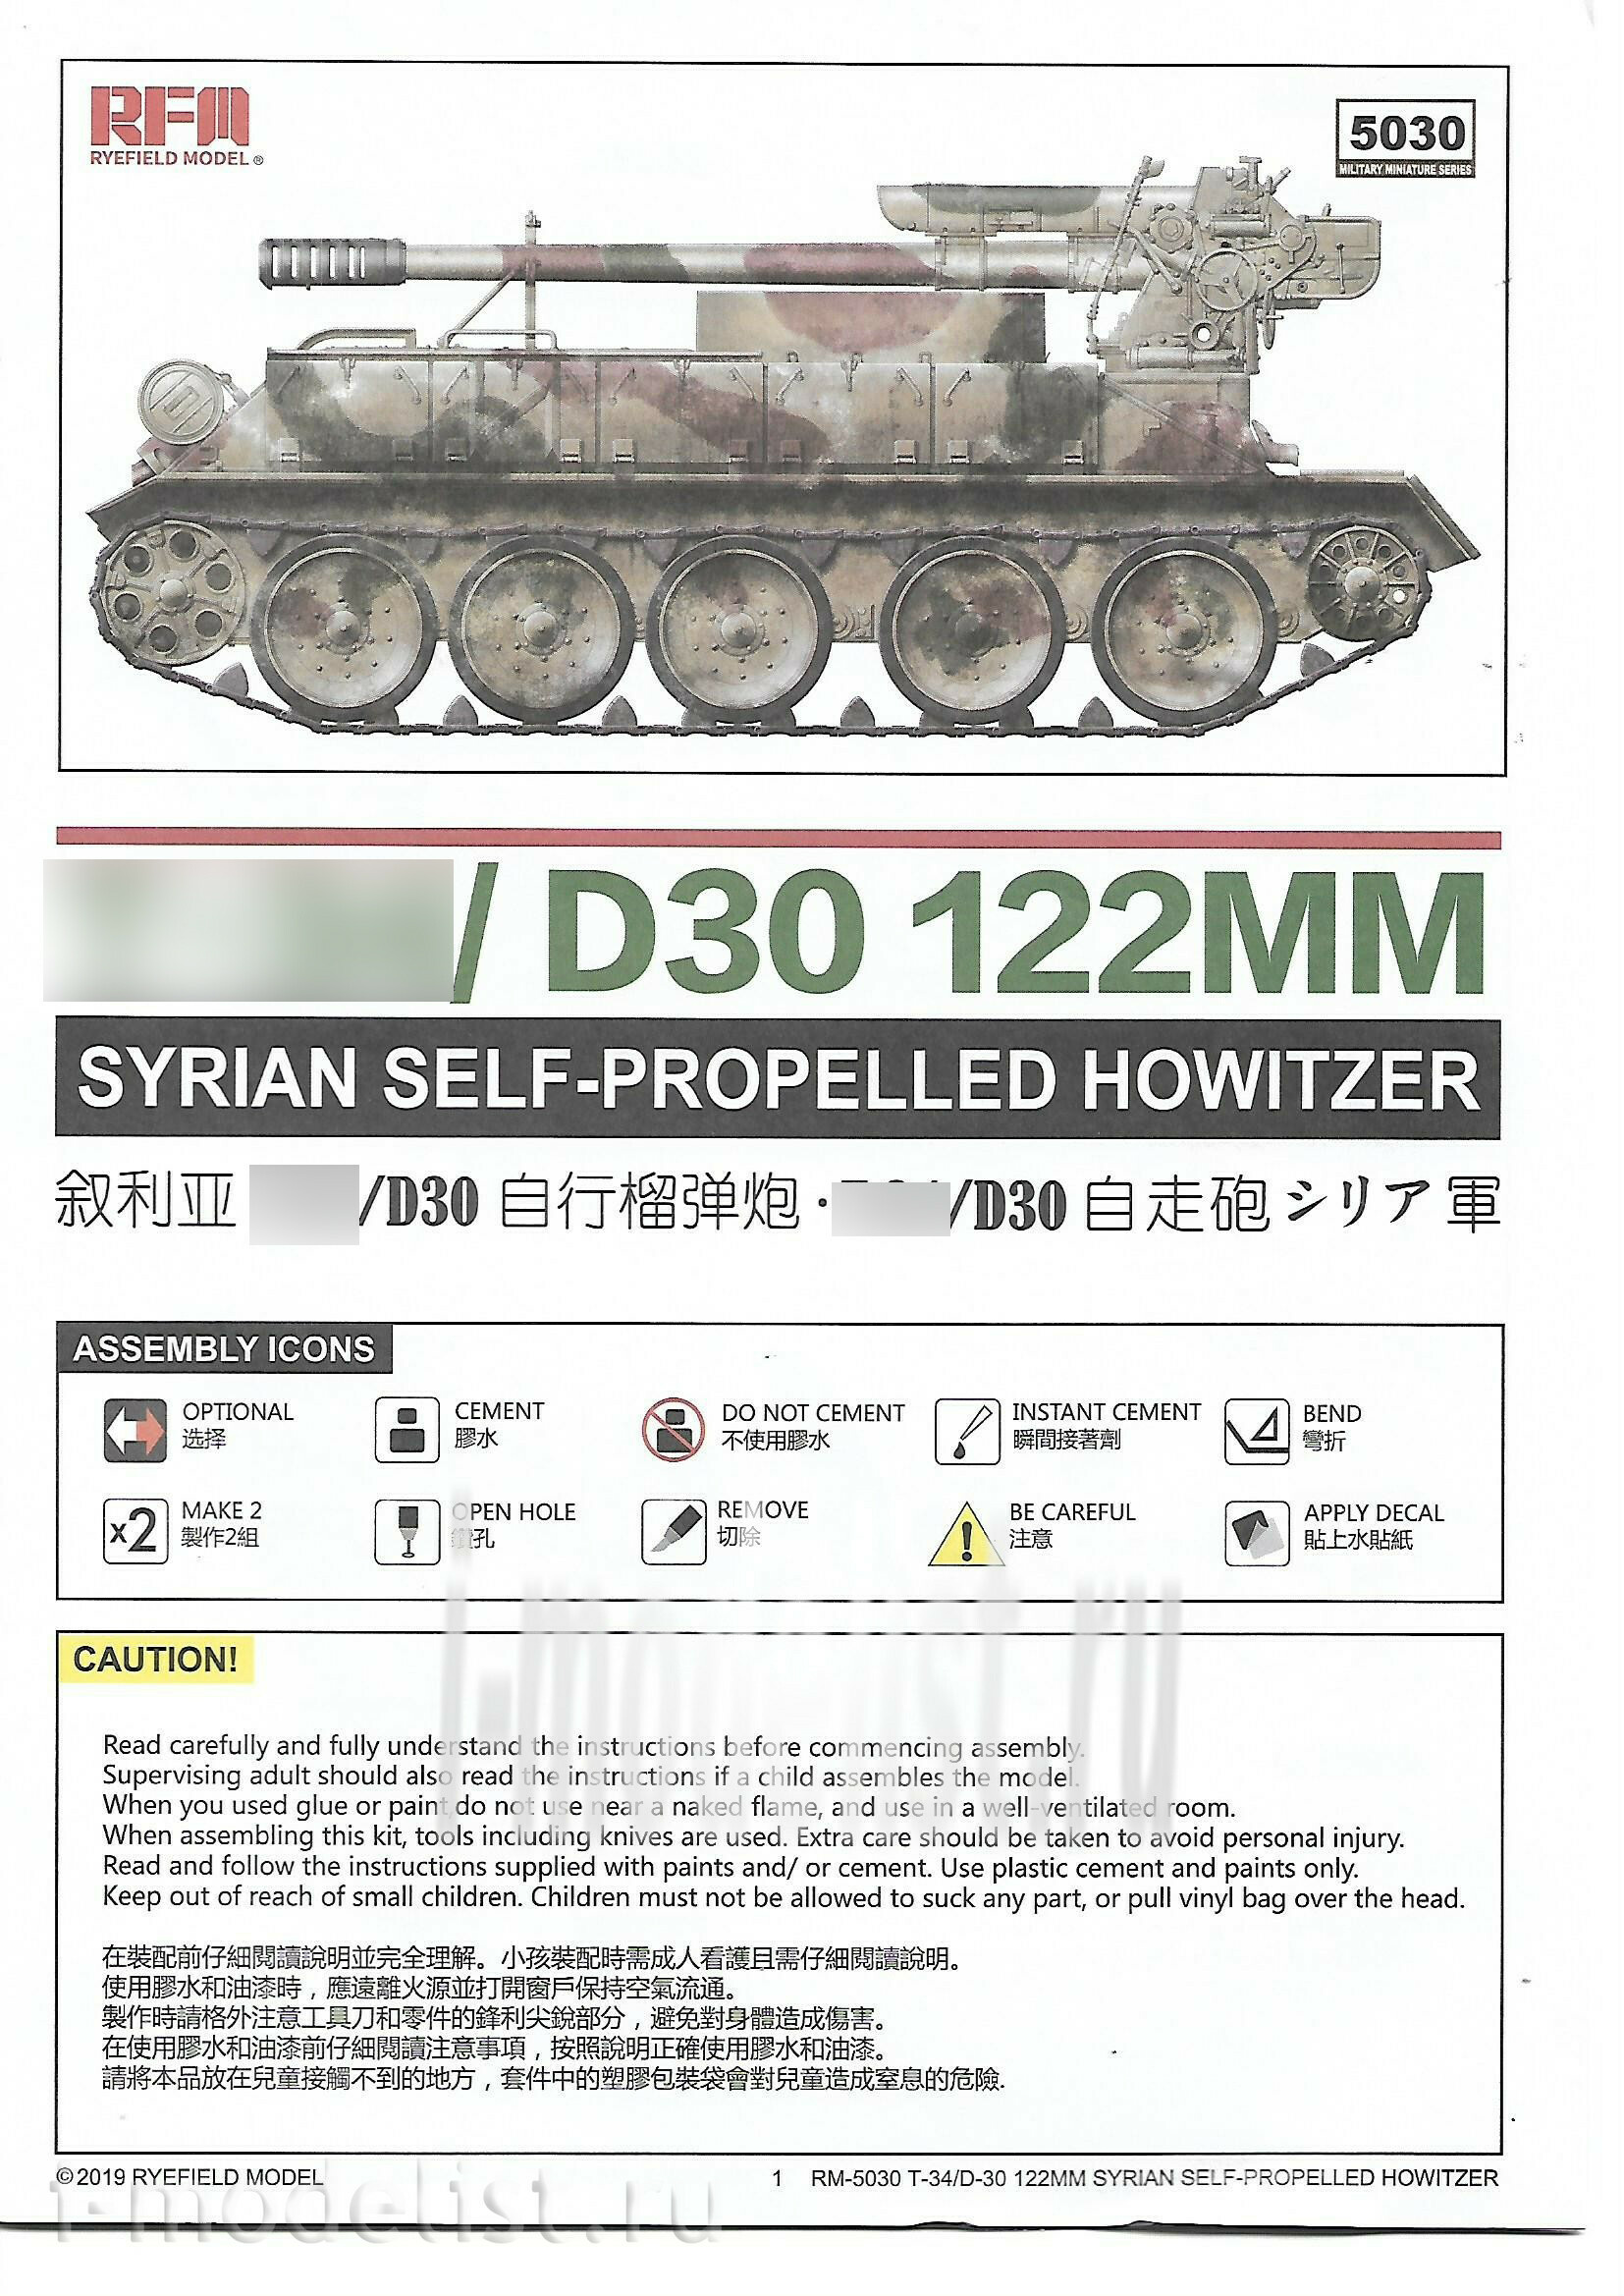 RM-5030 Rye Field Model 1/35 Tank 34/D-30 122MM SYRIAN SELF-PROPELLED HOWITZER